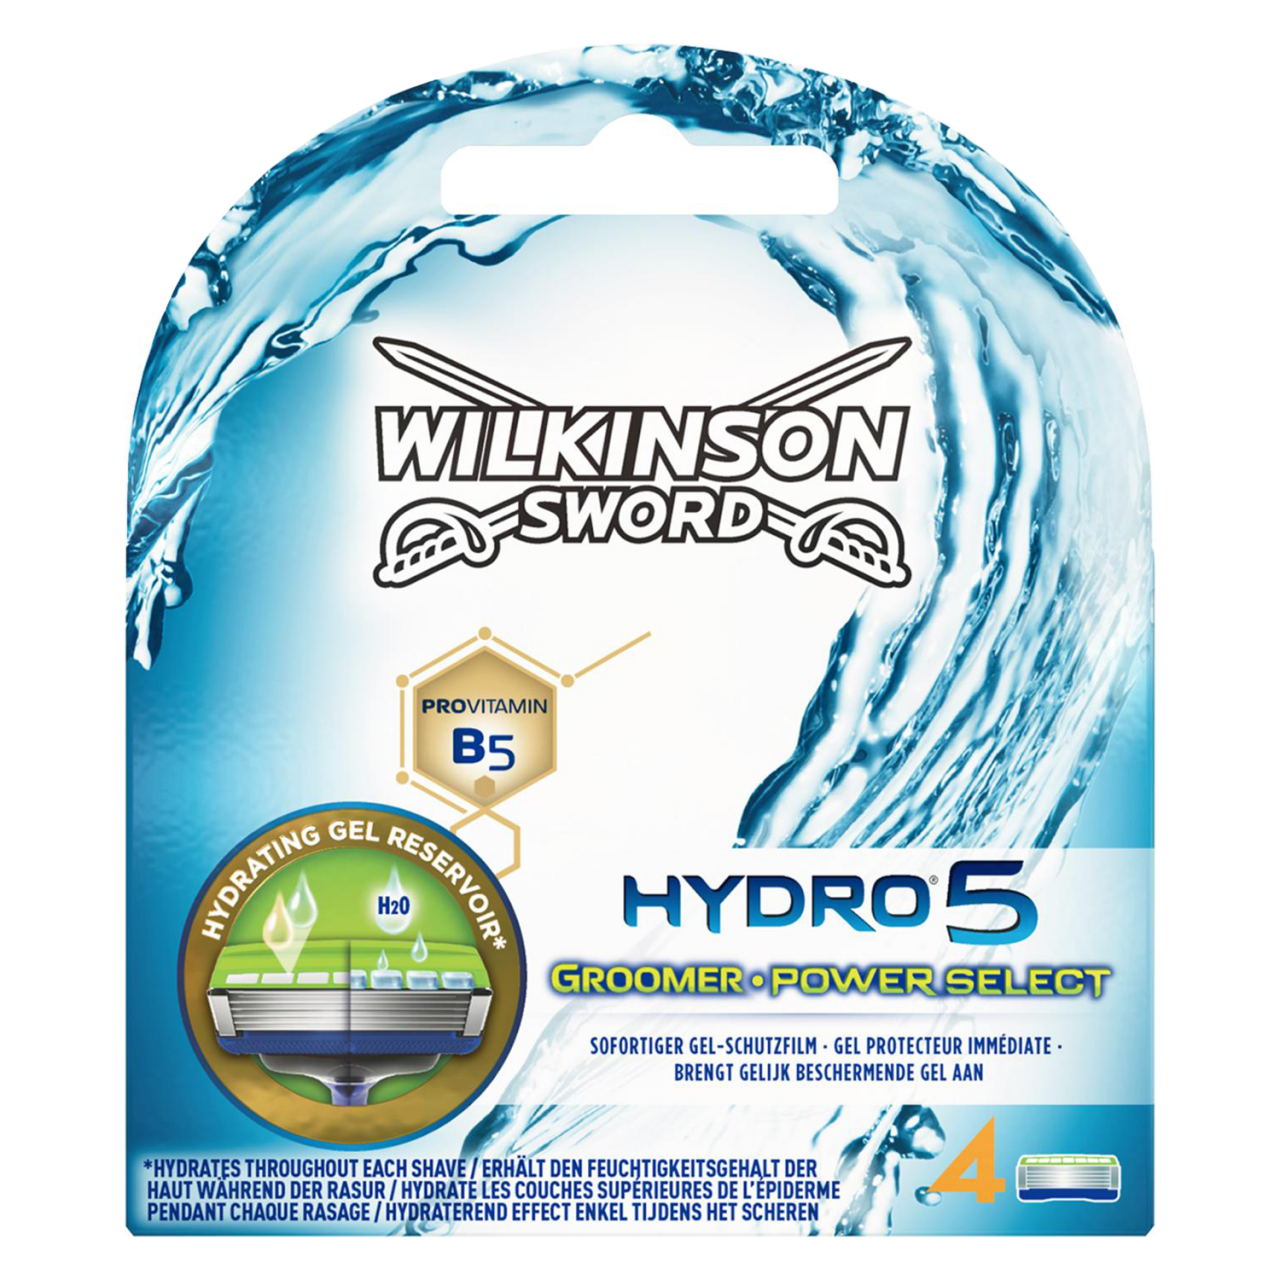 Hydro - Ersatzklingen Power Select & Groomer von Wilkinson